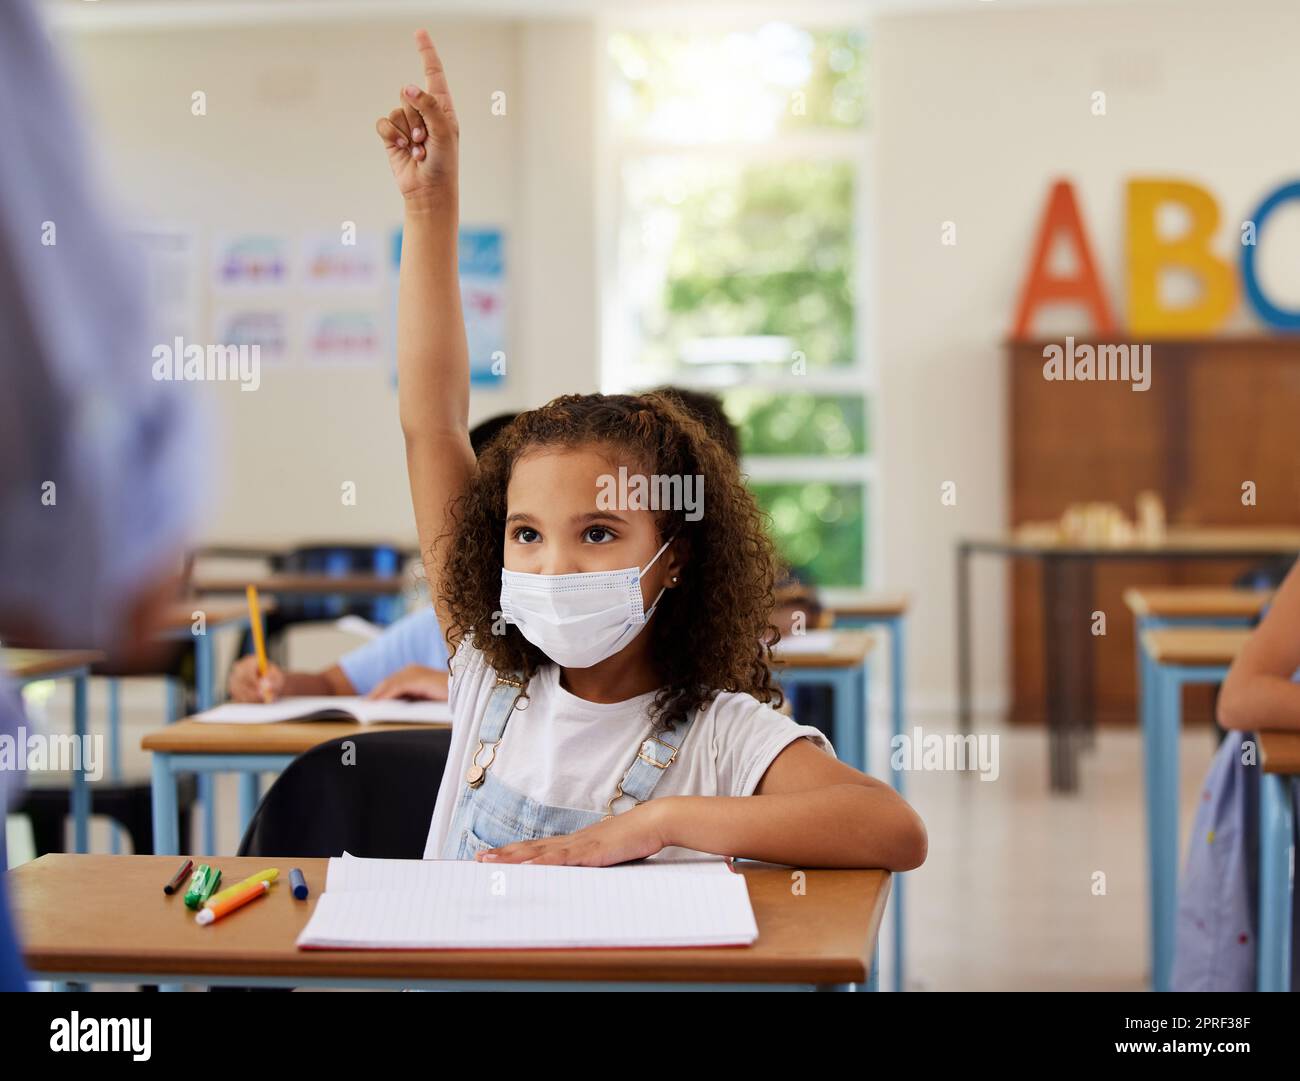 Covid, lernen und lernen mit einer jungen Schülerin, die eine Maske trägt und ihre Hand hebt, um in der Schule eine Frage zu stellen oder zu beantworten. Weibliches Kind, das den Lehrer in einem Klassenzimmer fragt oder antwortet Stockfoto